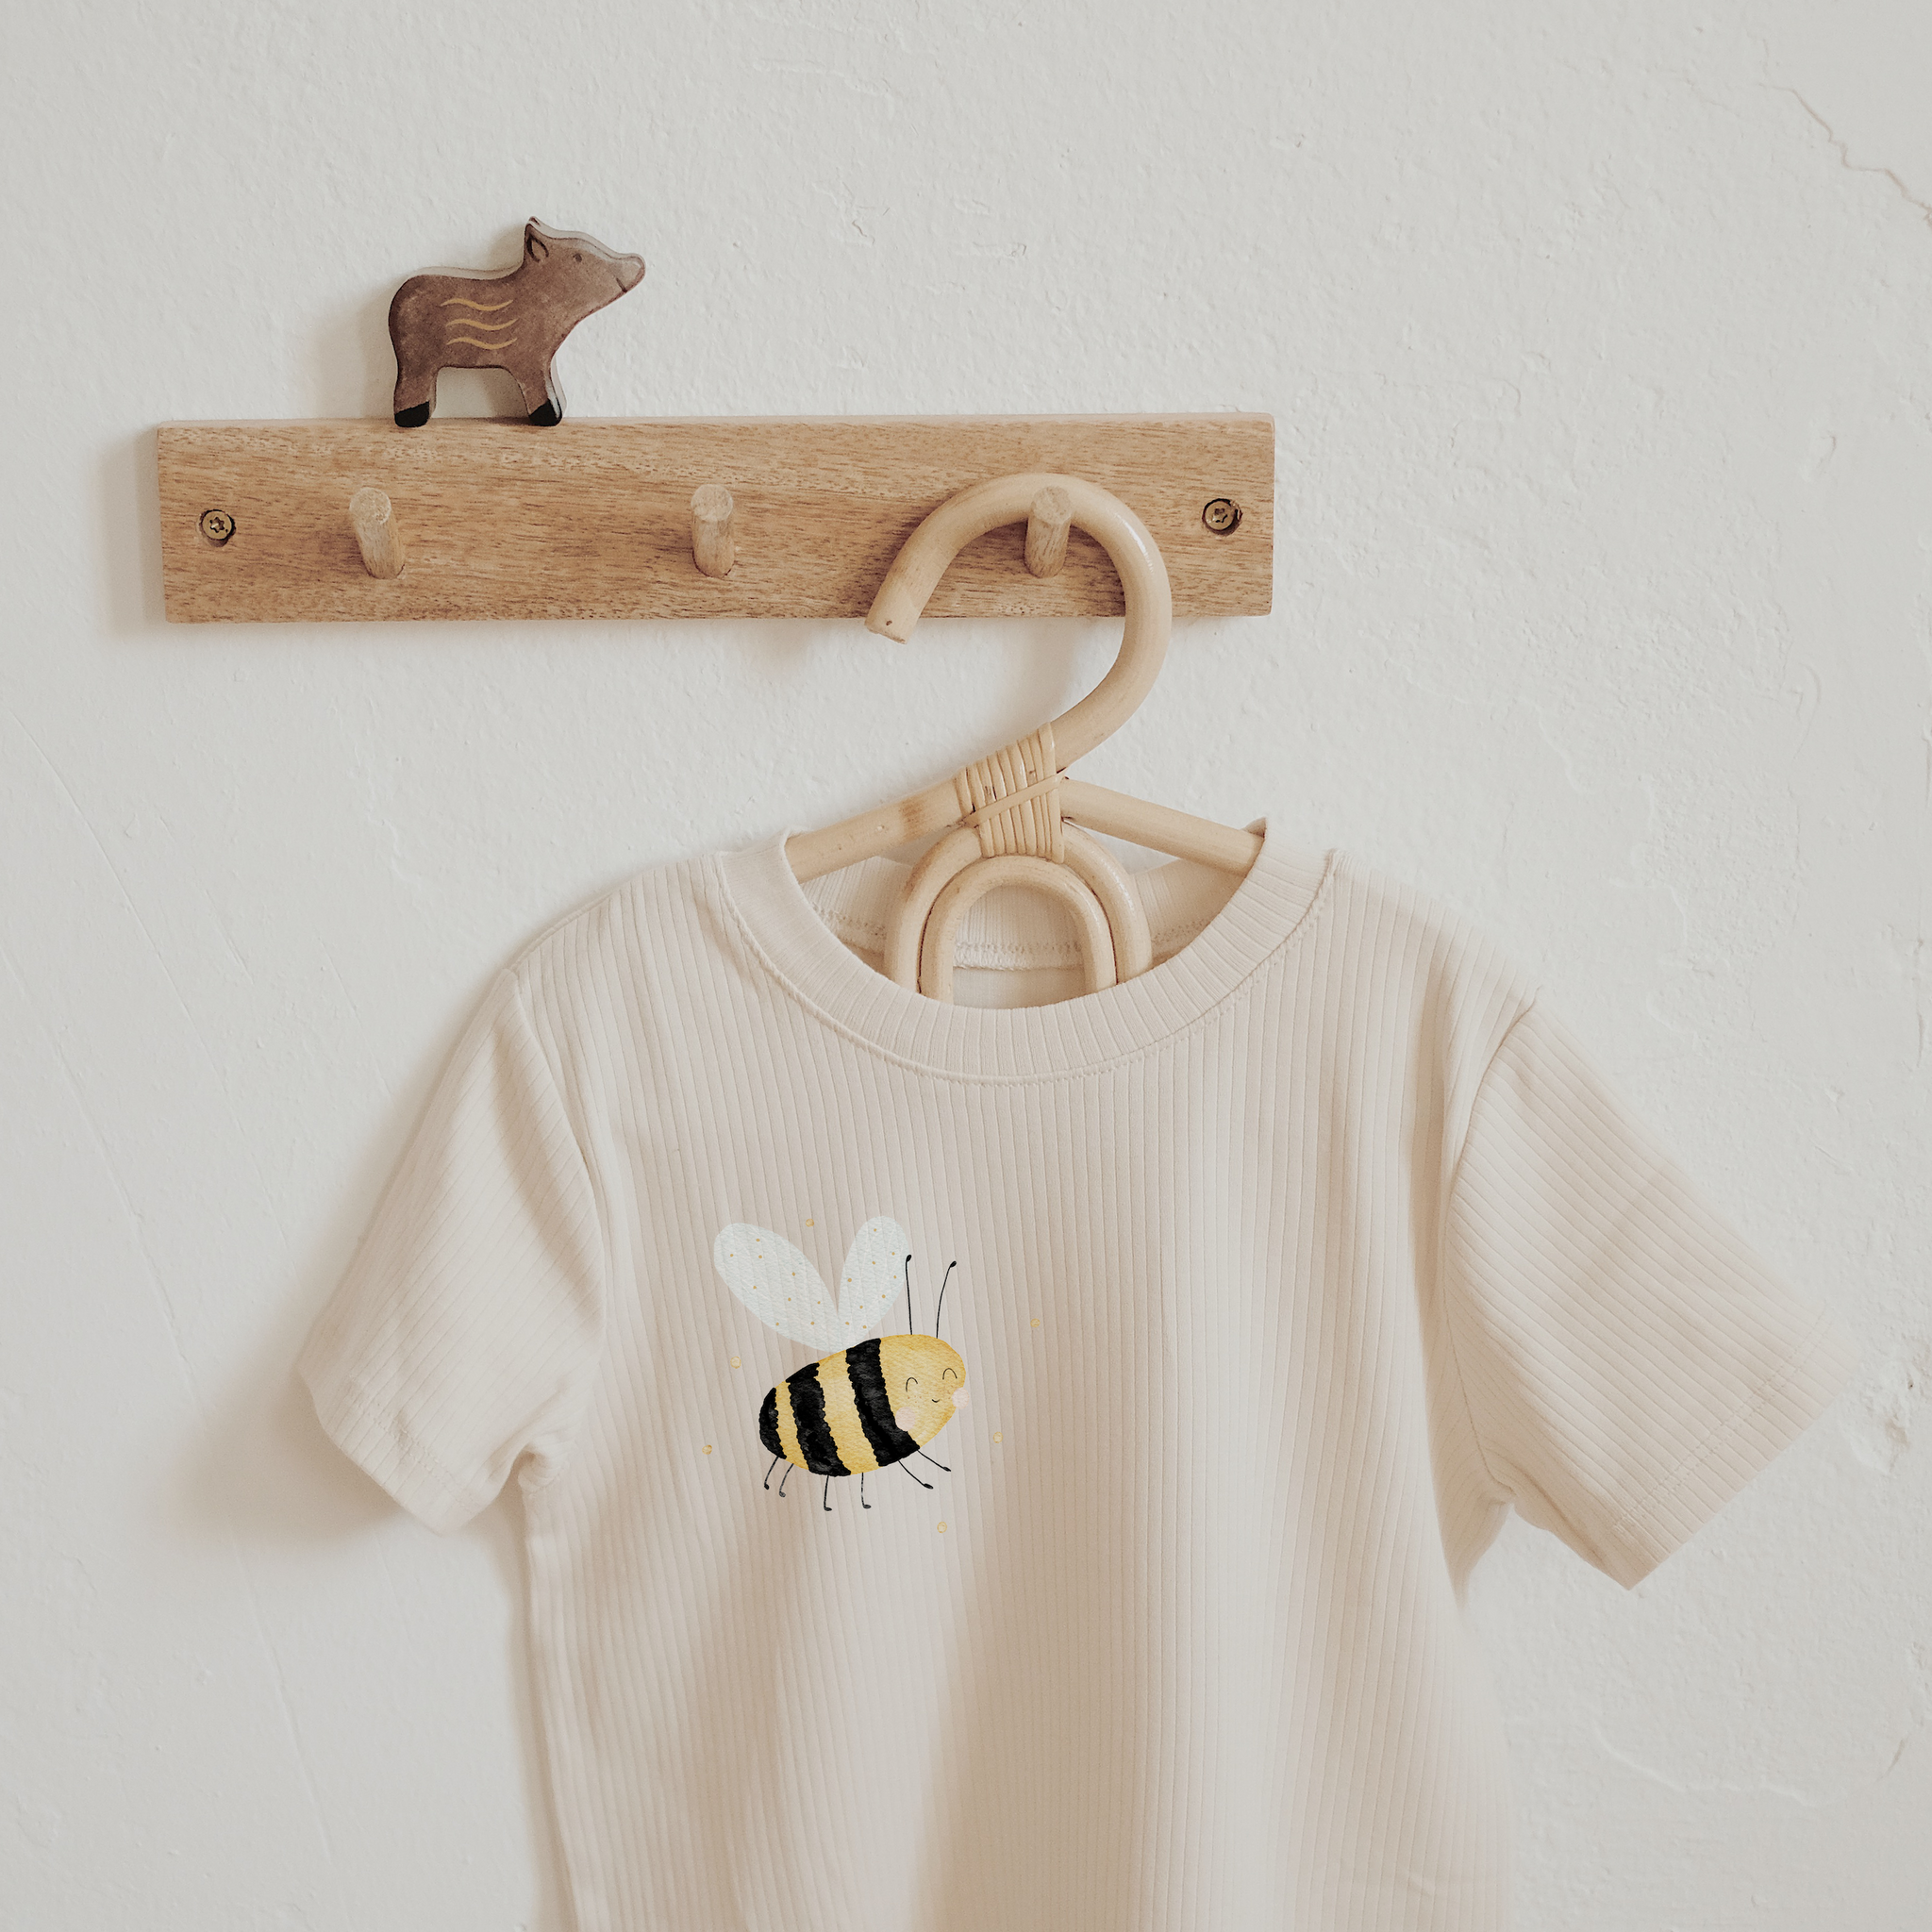 Bügelbild Biene